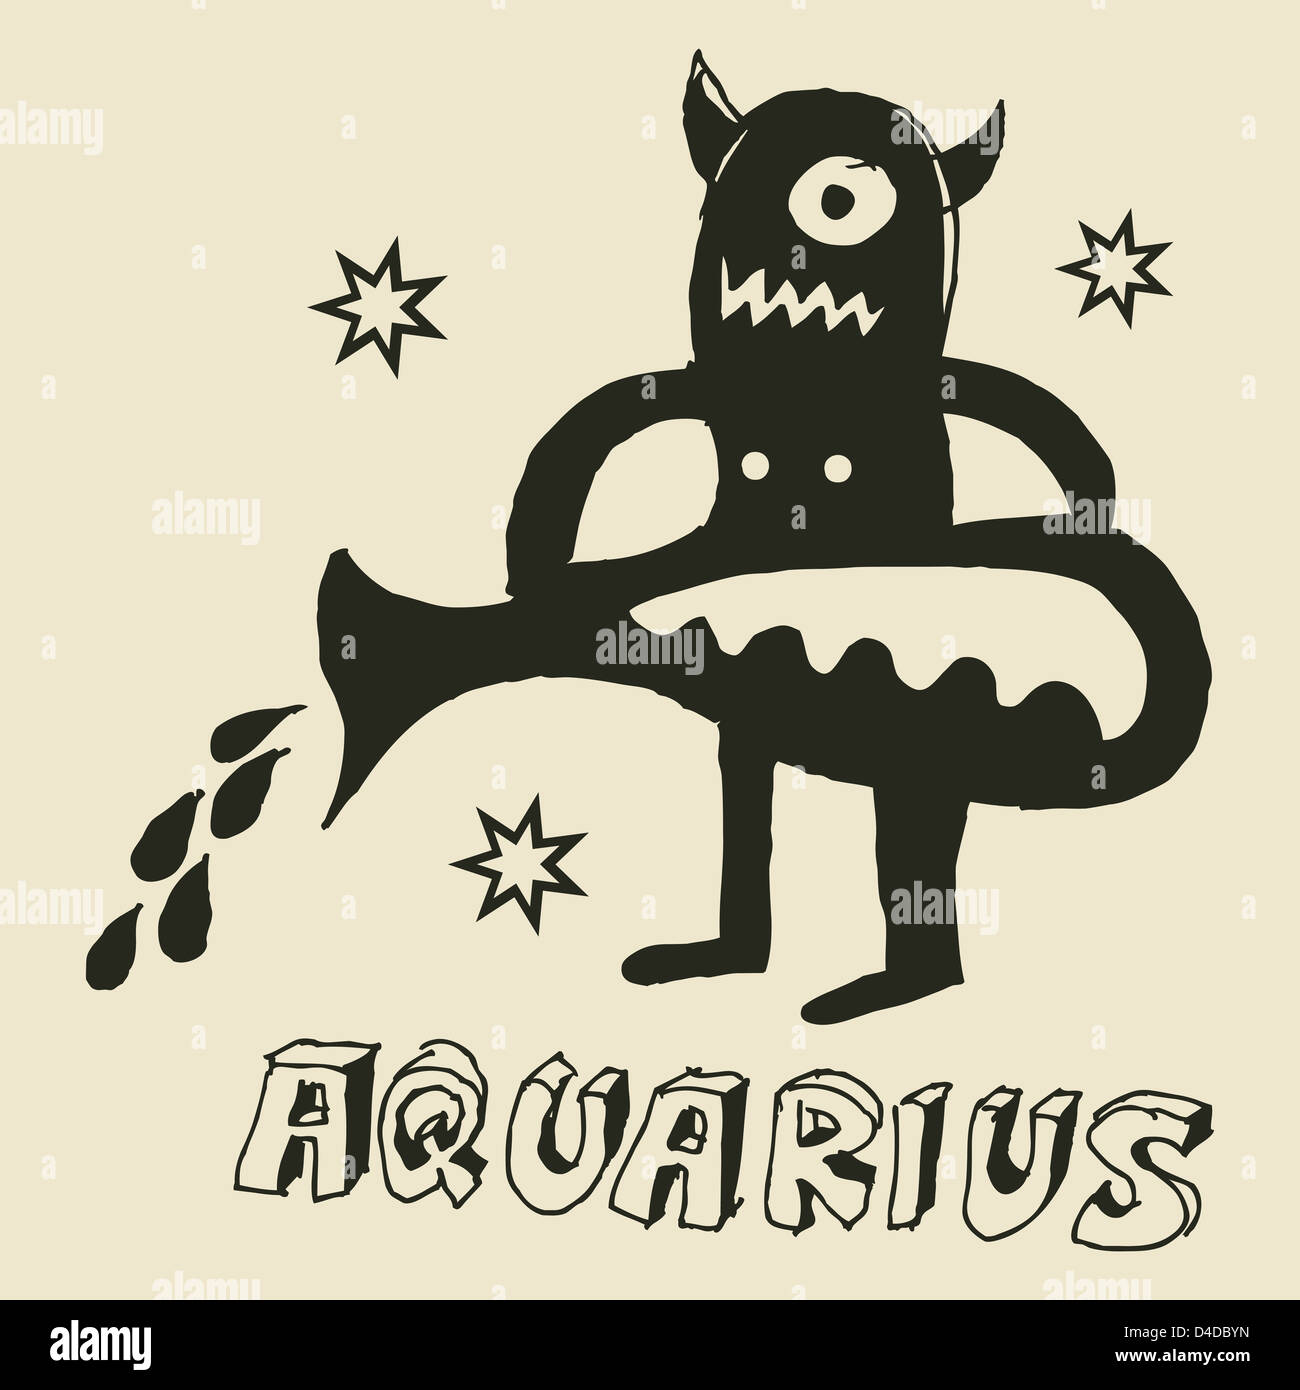 Oroscopo archaistic, disegnati a mano il segno dello zodiaco Aquarius Foto Stock